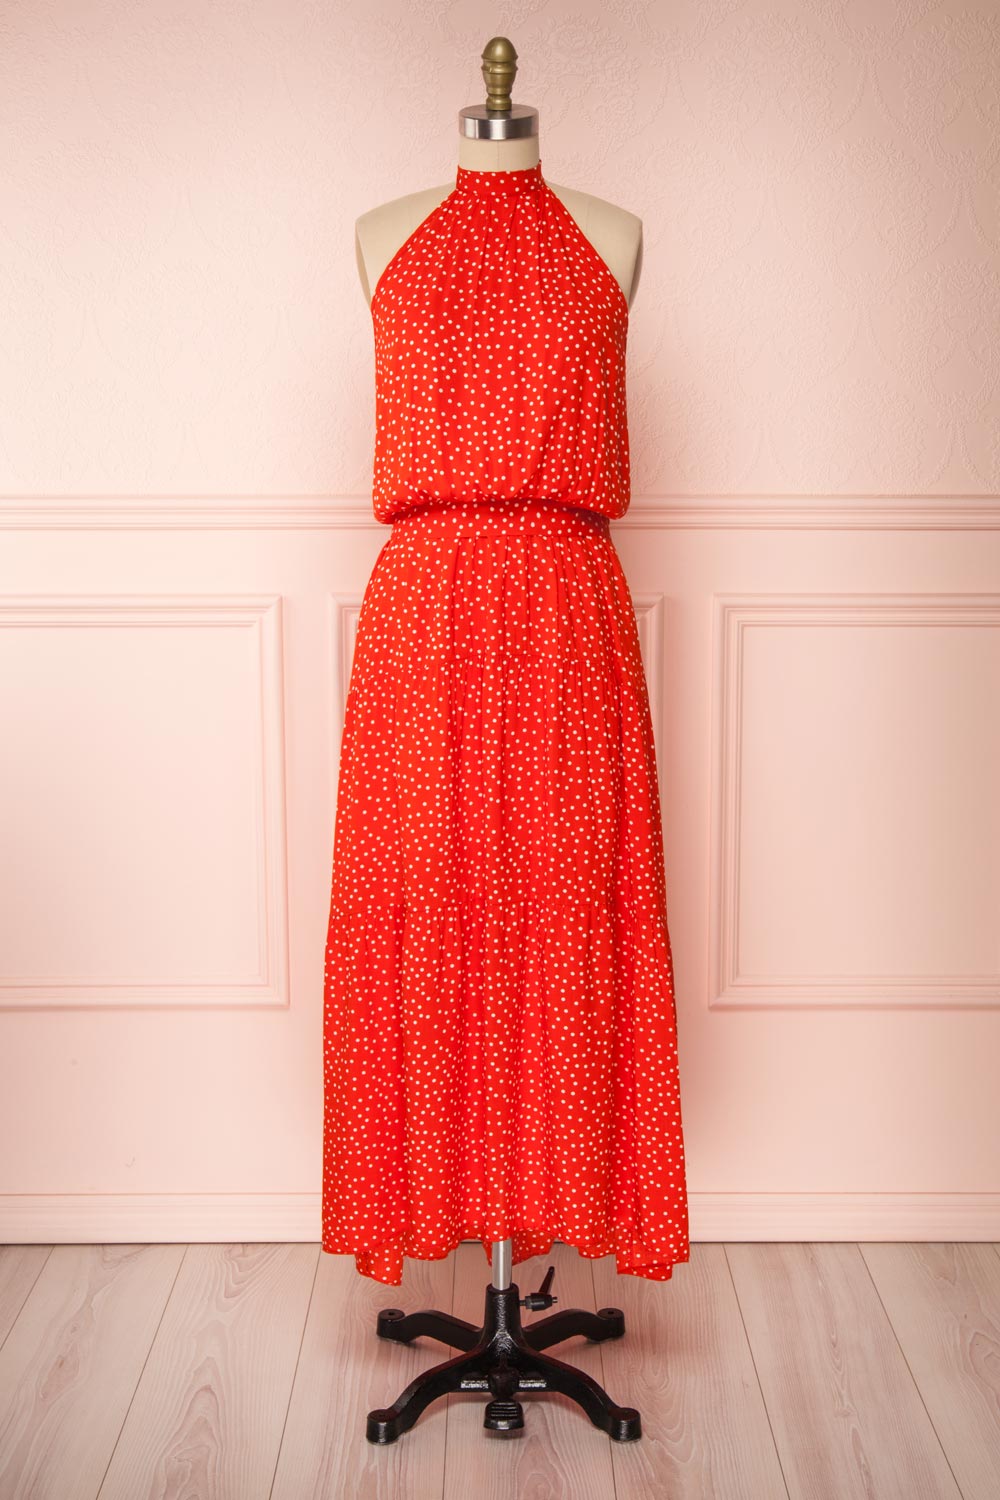 Hagoromo Red & White Polka Dots Maxi Dress | La petite garçonne front view